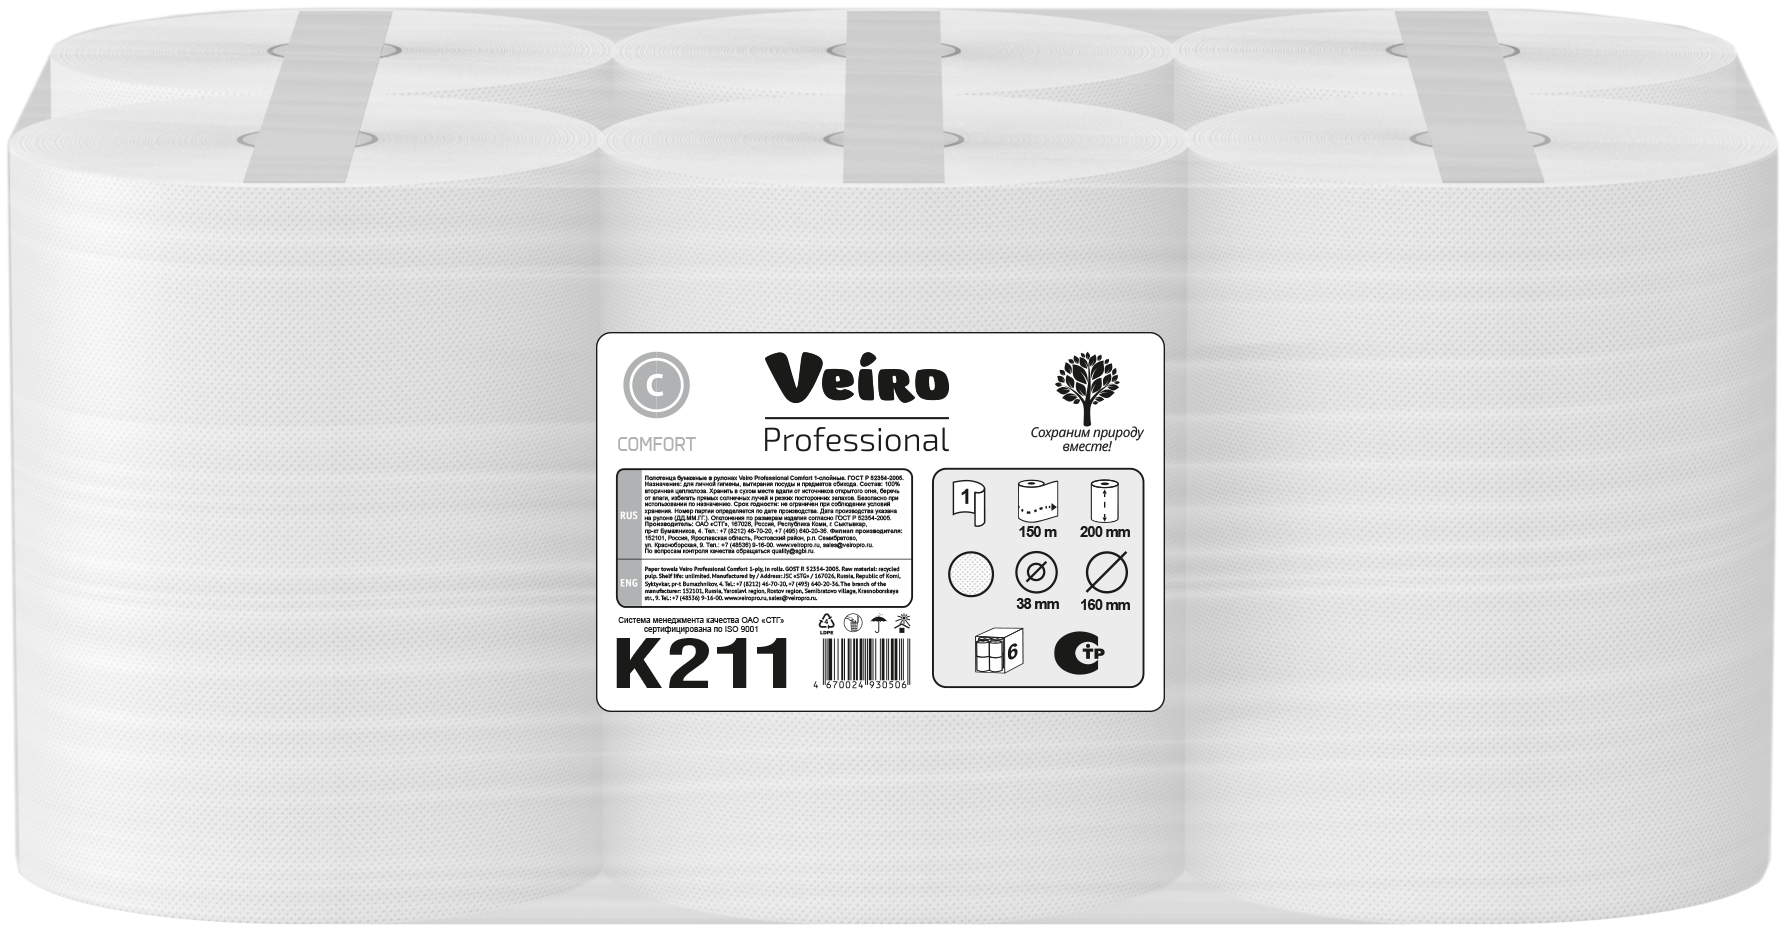 Полотенца Veiro Professional Comfort в рулонах 150 м, 1 слой, 6рул/упак